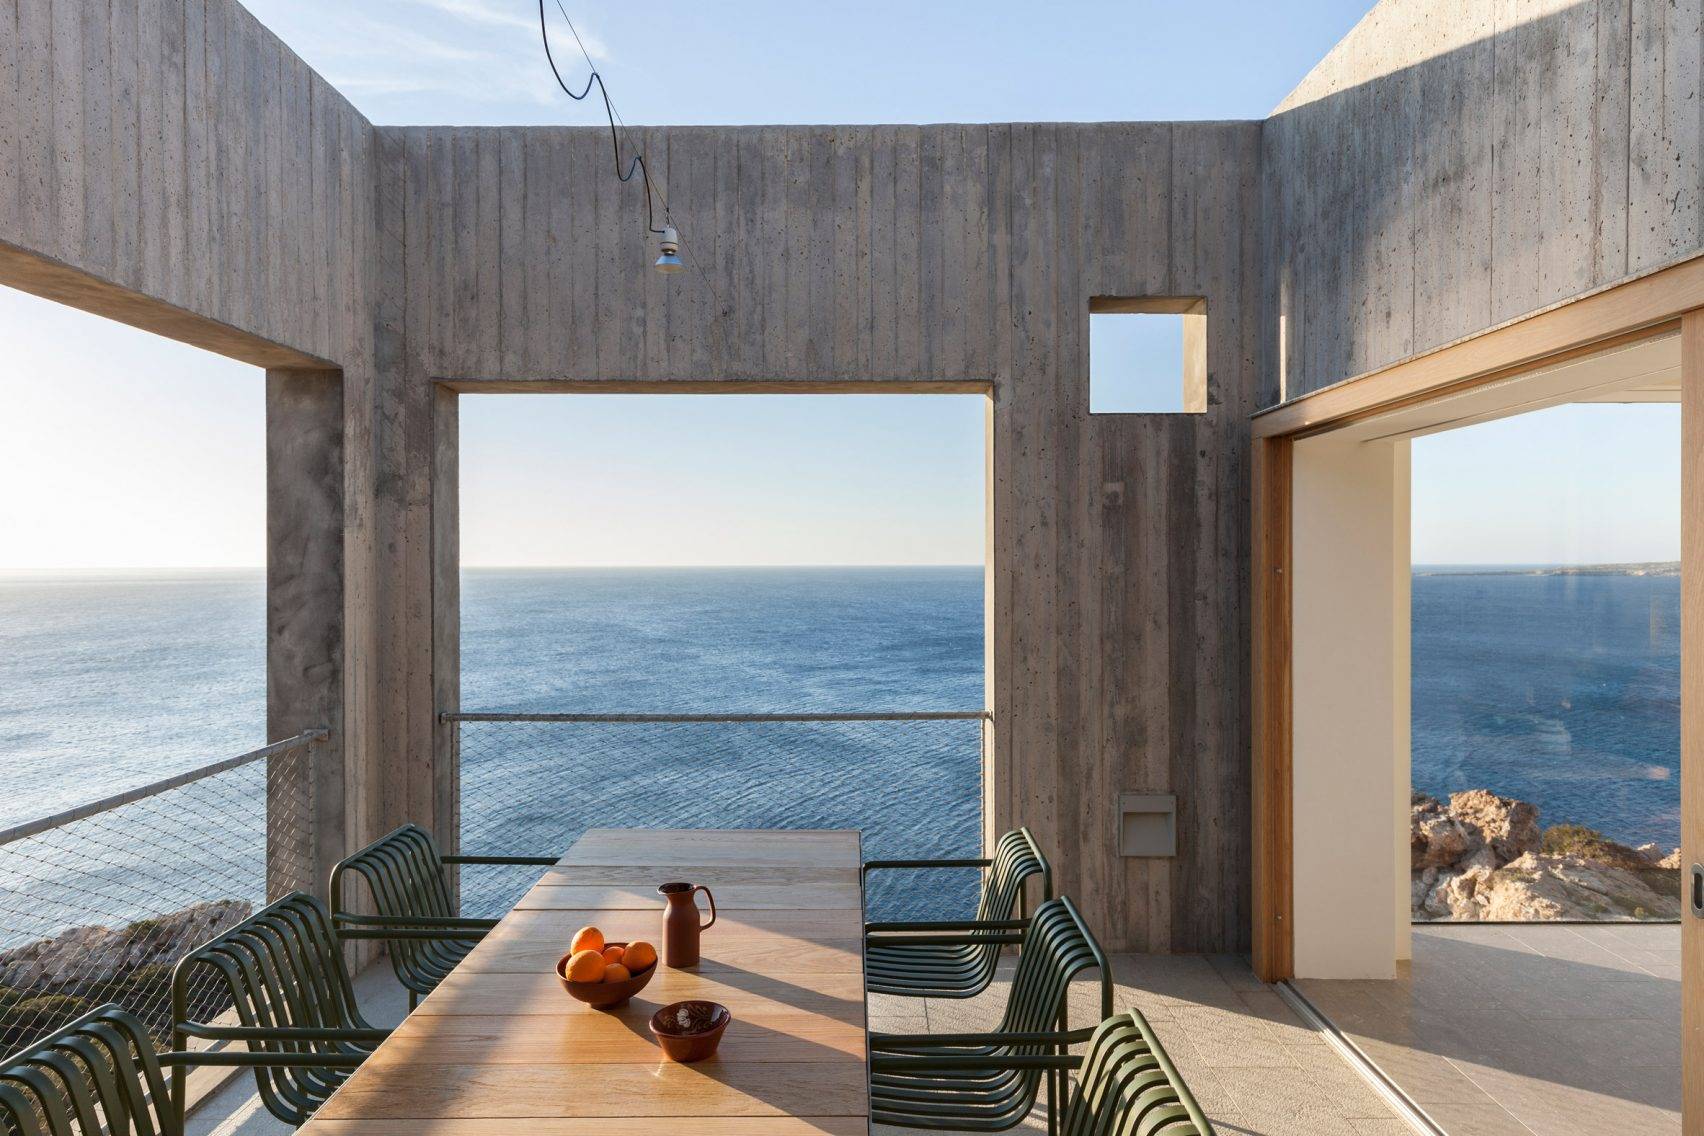 Casa Patio, por OOAK Architects.